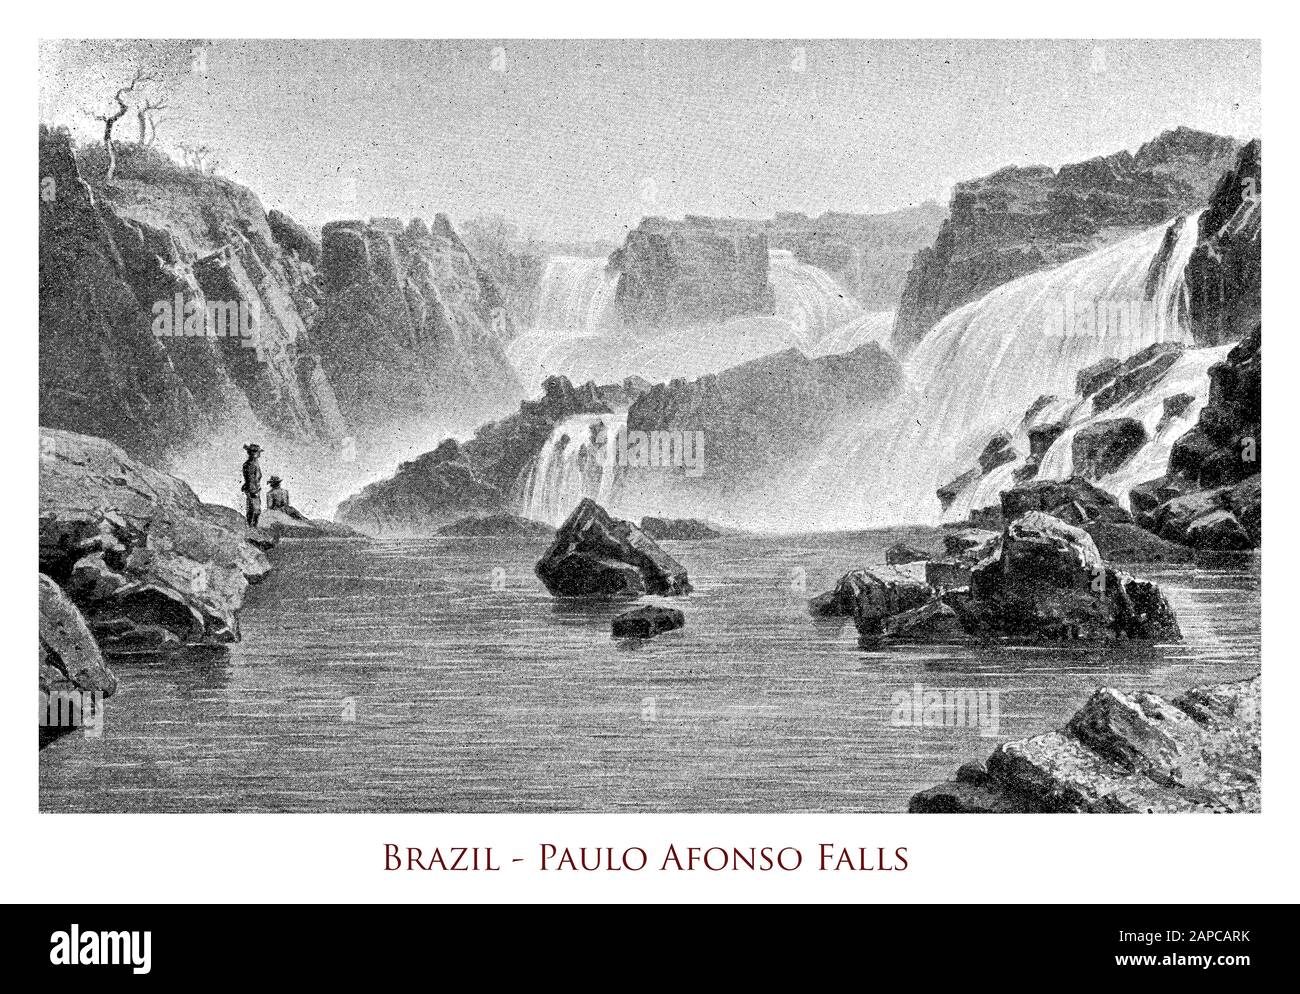 Brasile - Paulo Afonso Falls, serie di cascate e tre cataratte sul fiume Sao Francisco nel nord-est del Brasile, vicino alla città di Paulo Afonso fino a 84 m di altezza Foto Stock